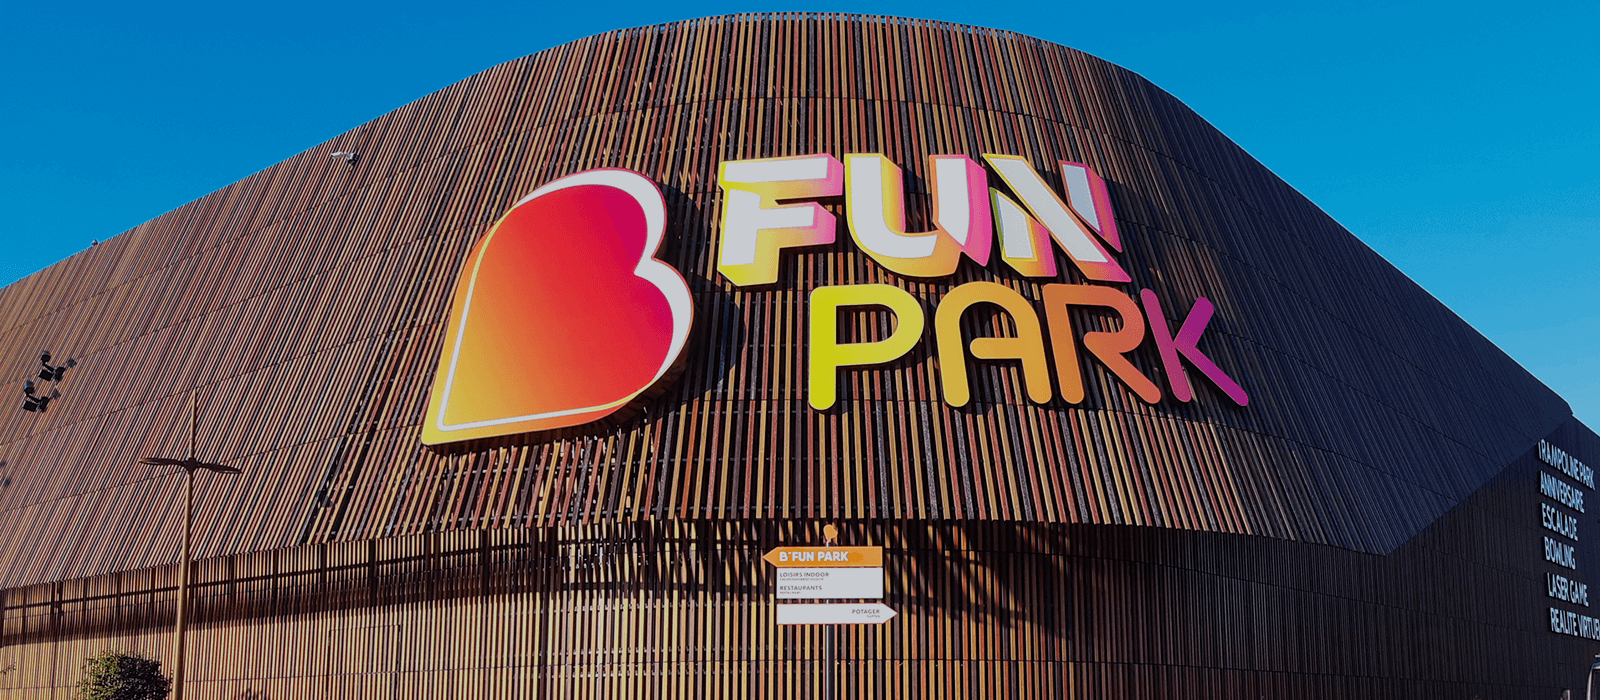 B'Fun Park